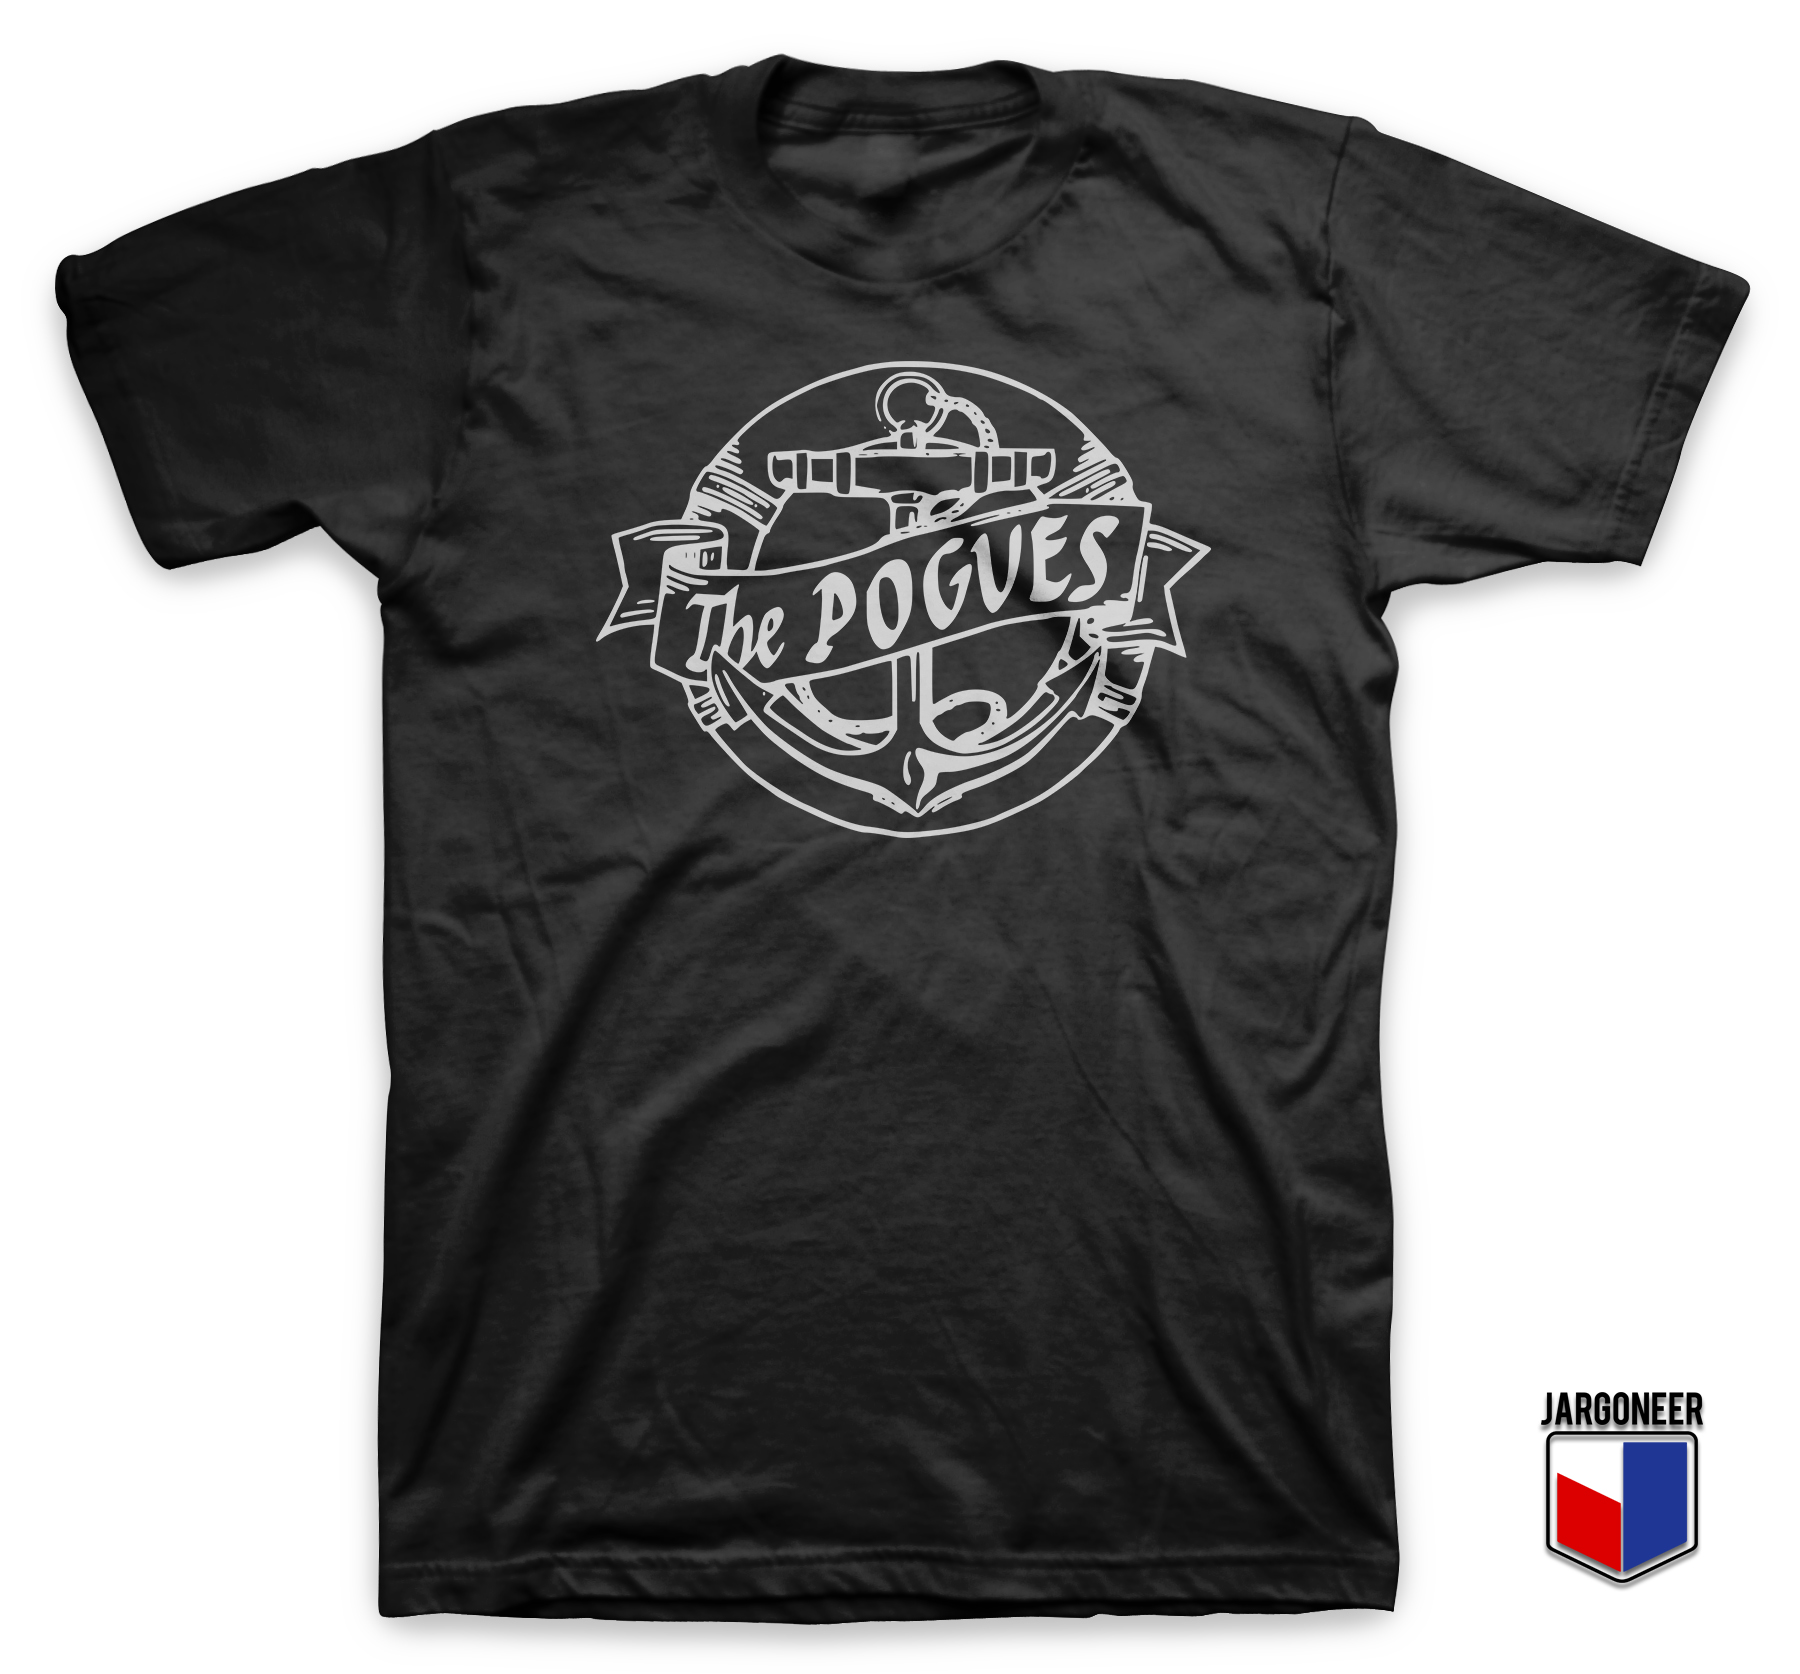 The Pogues Anchor Black T Shirt - Shop Unique Graphic Cool Shirt Designs